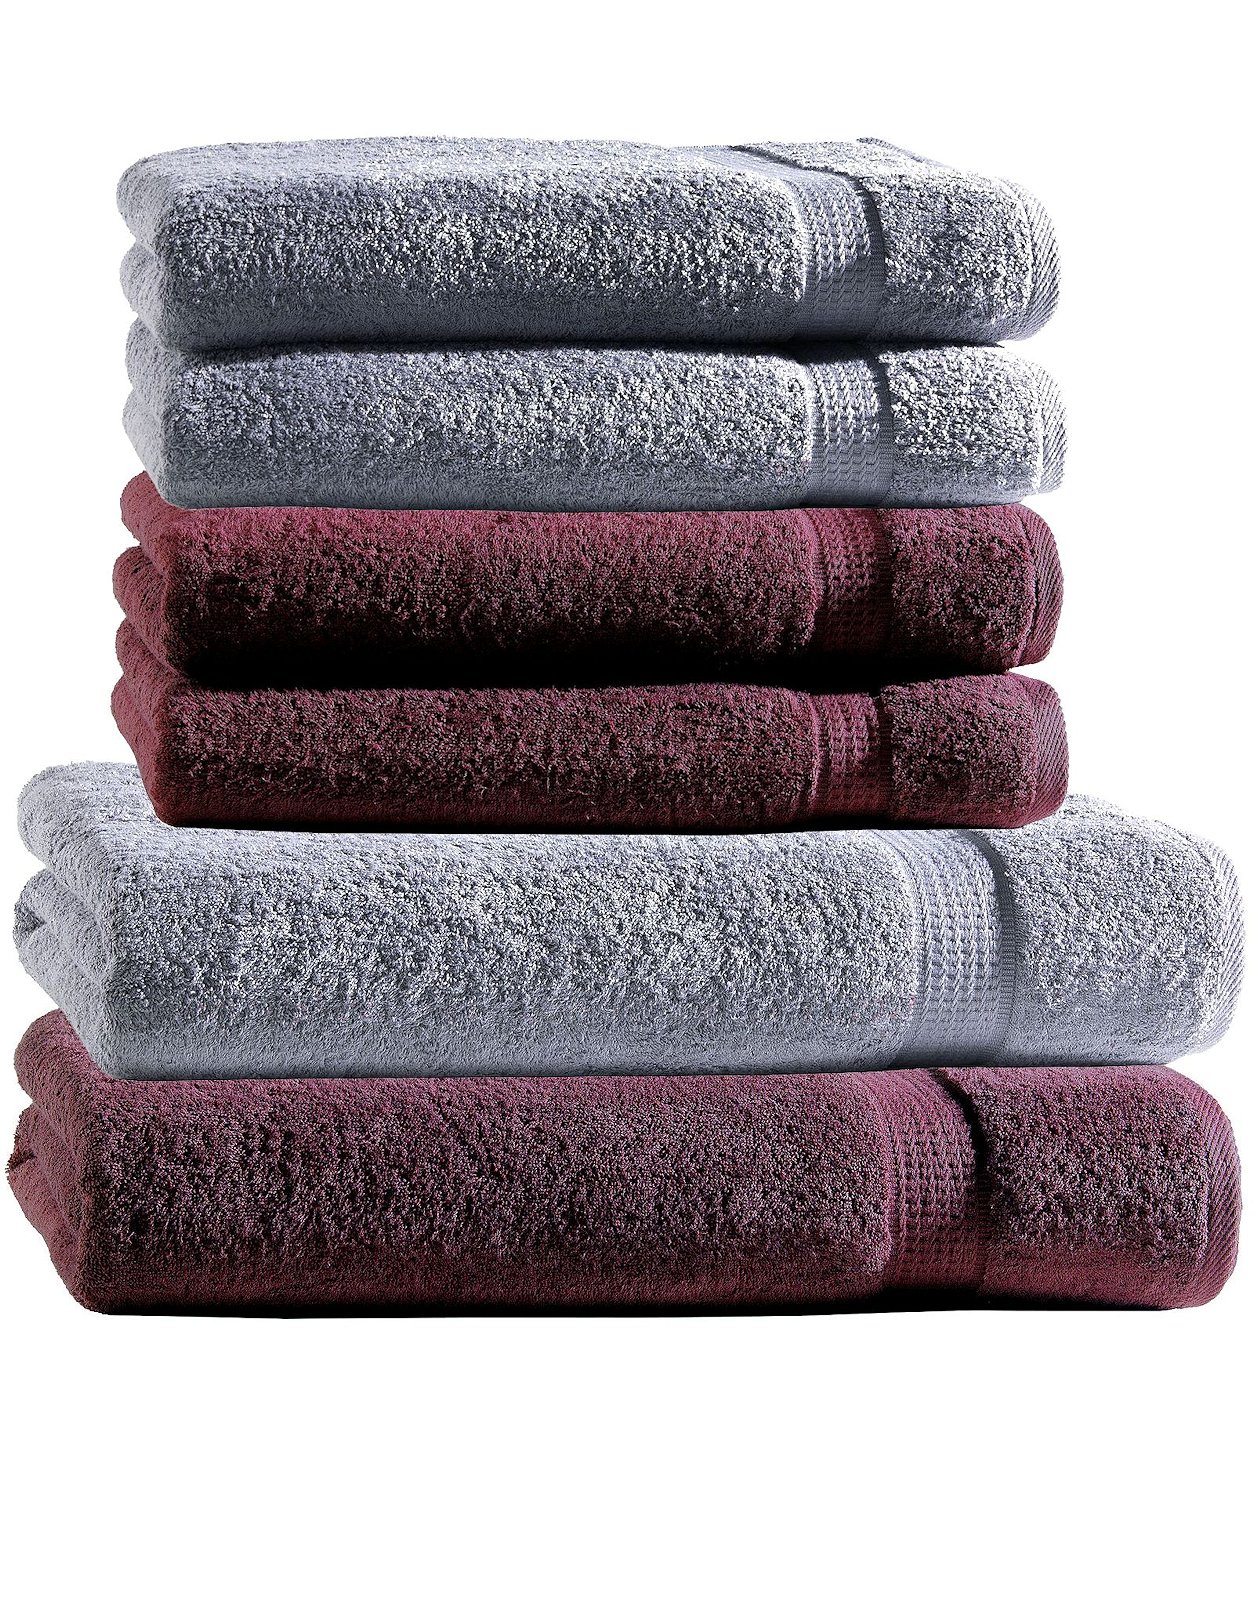 Handtuch Set 6tlg. 4 Duschtücher Duschtuch 2 2 Baumwolle eBay Farben Handtücher | Mix